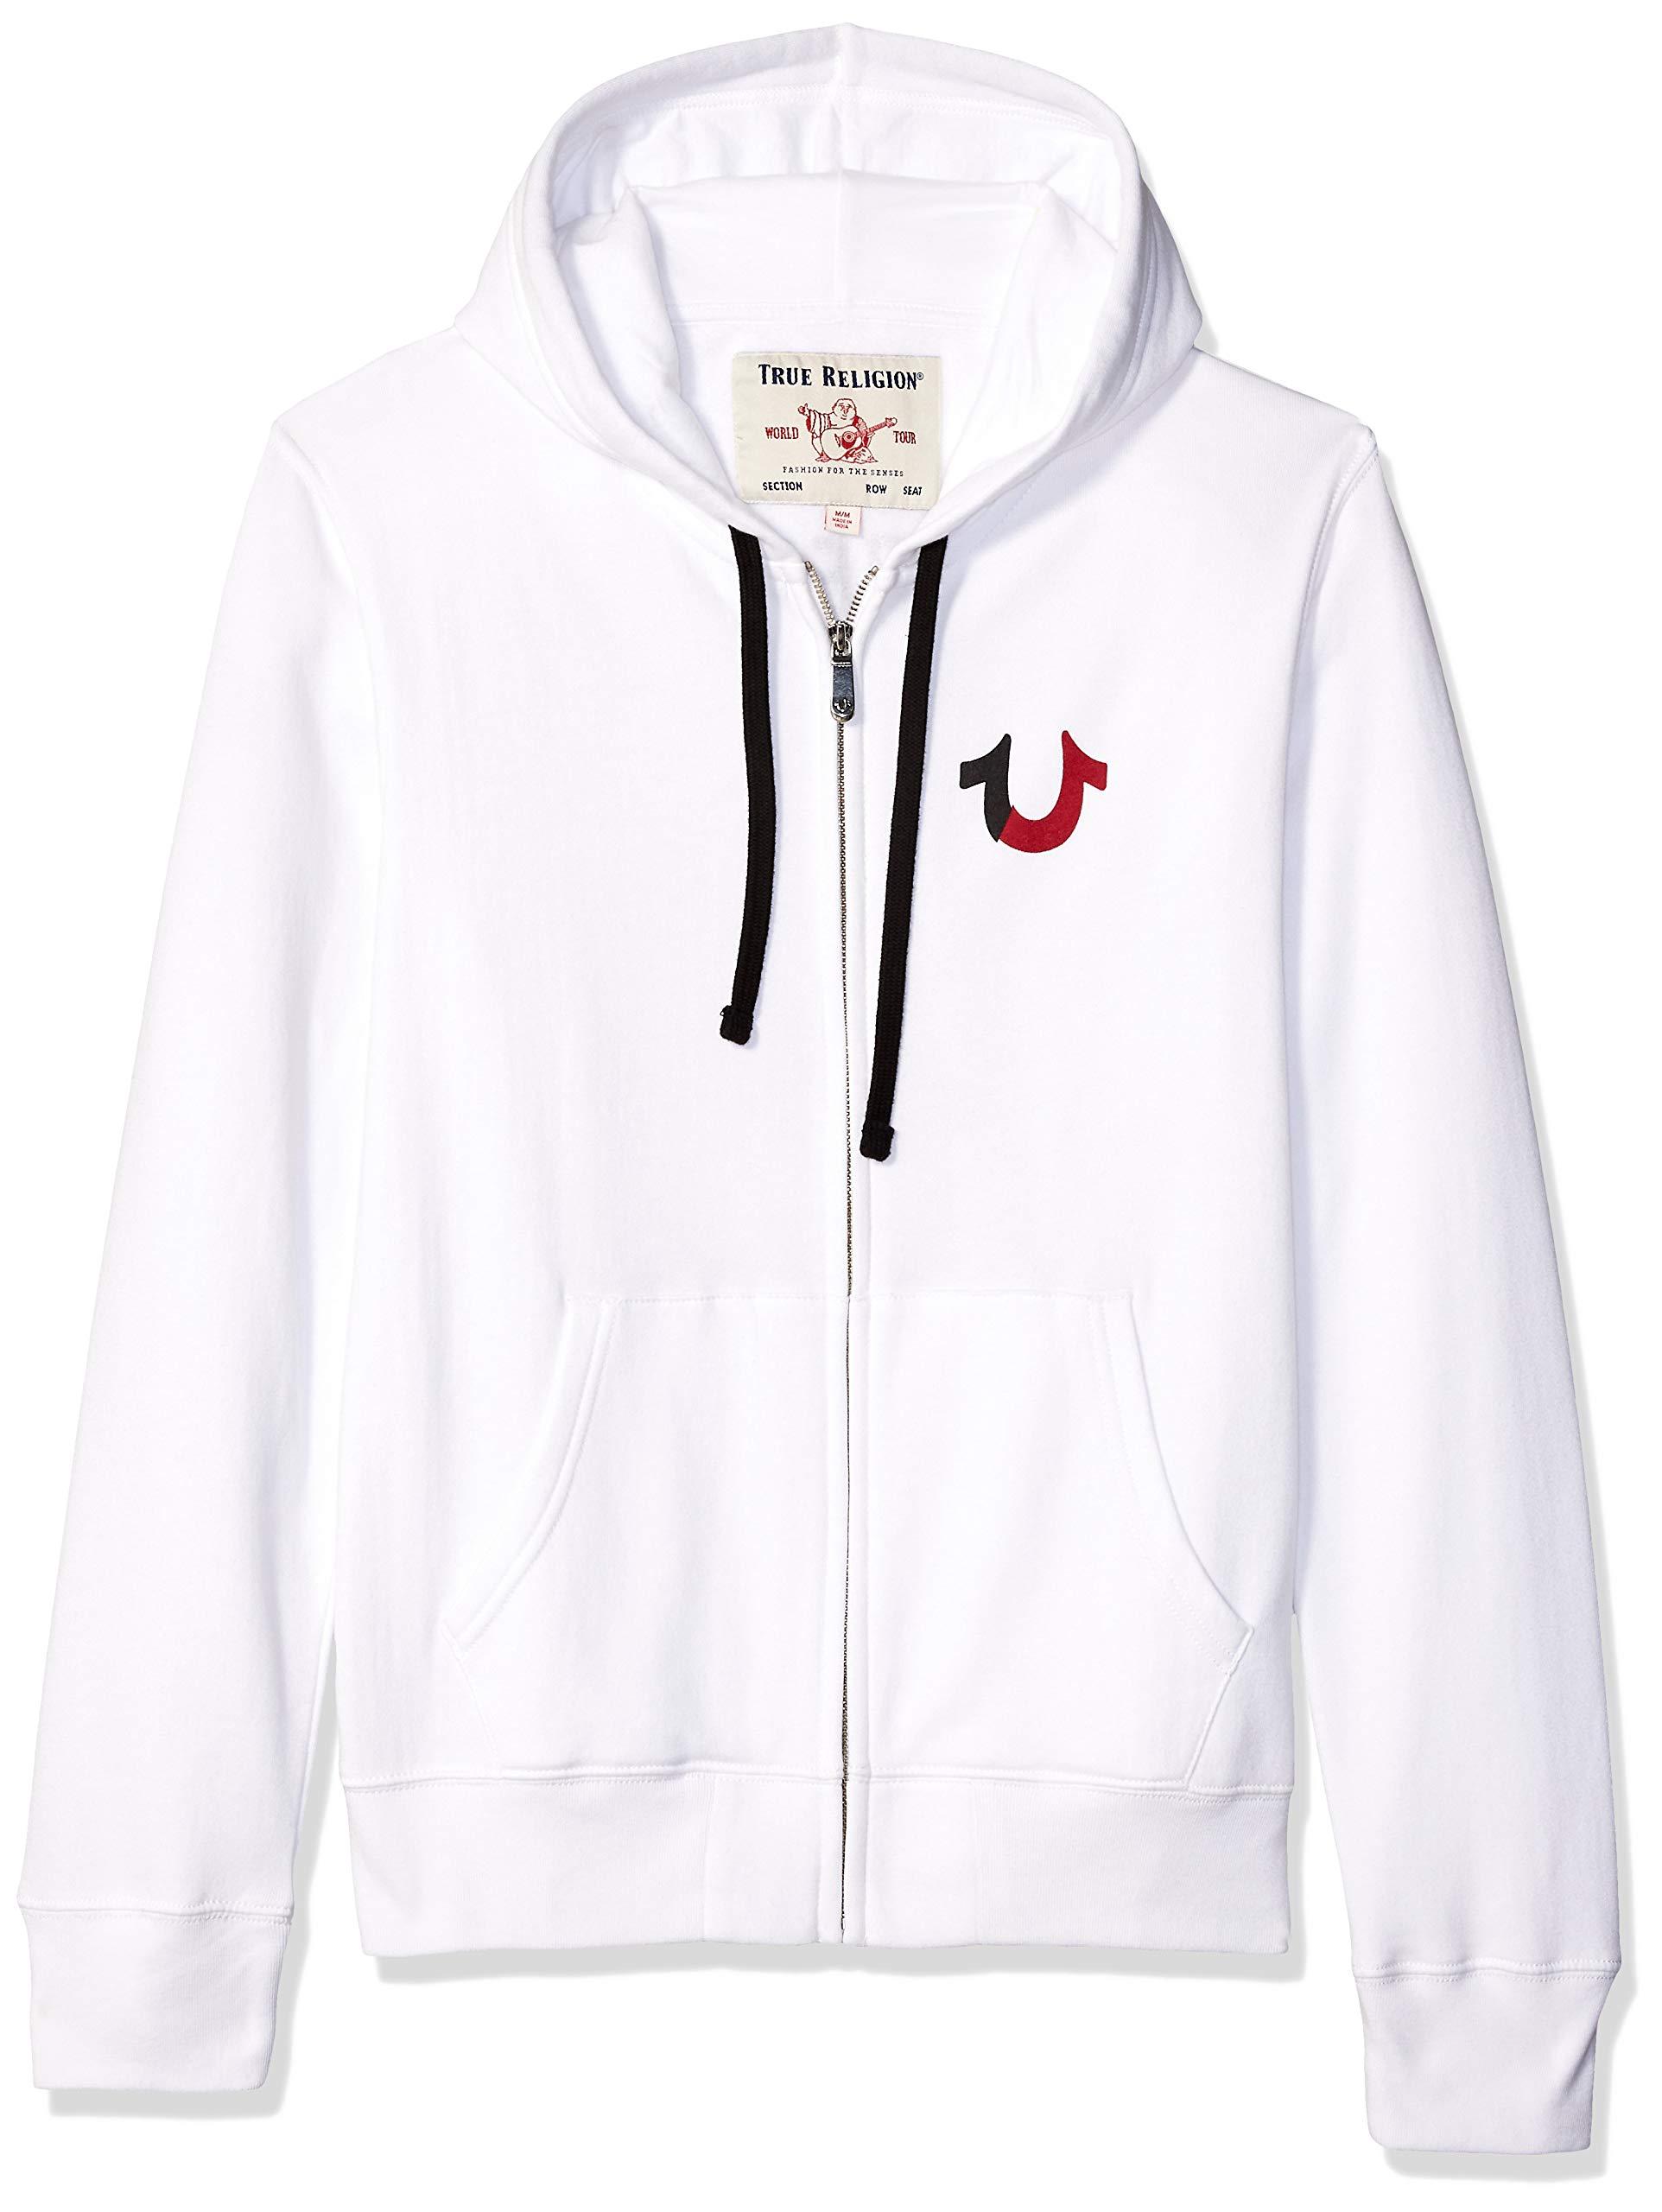 true religion grey zip up hoodie